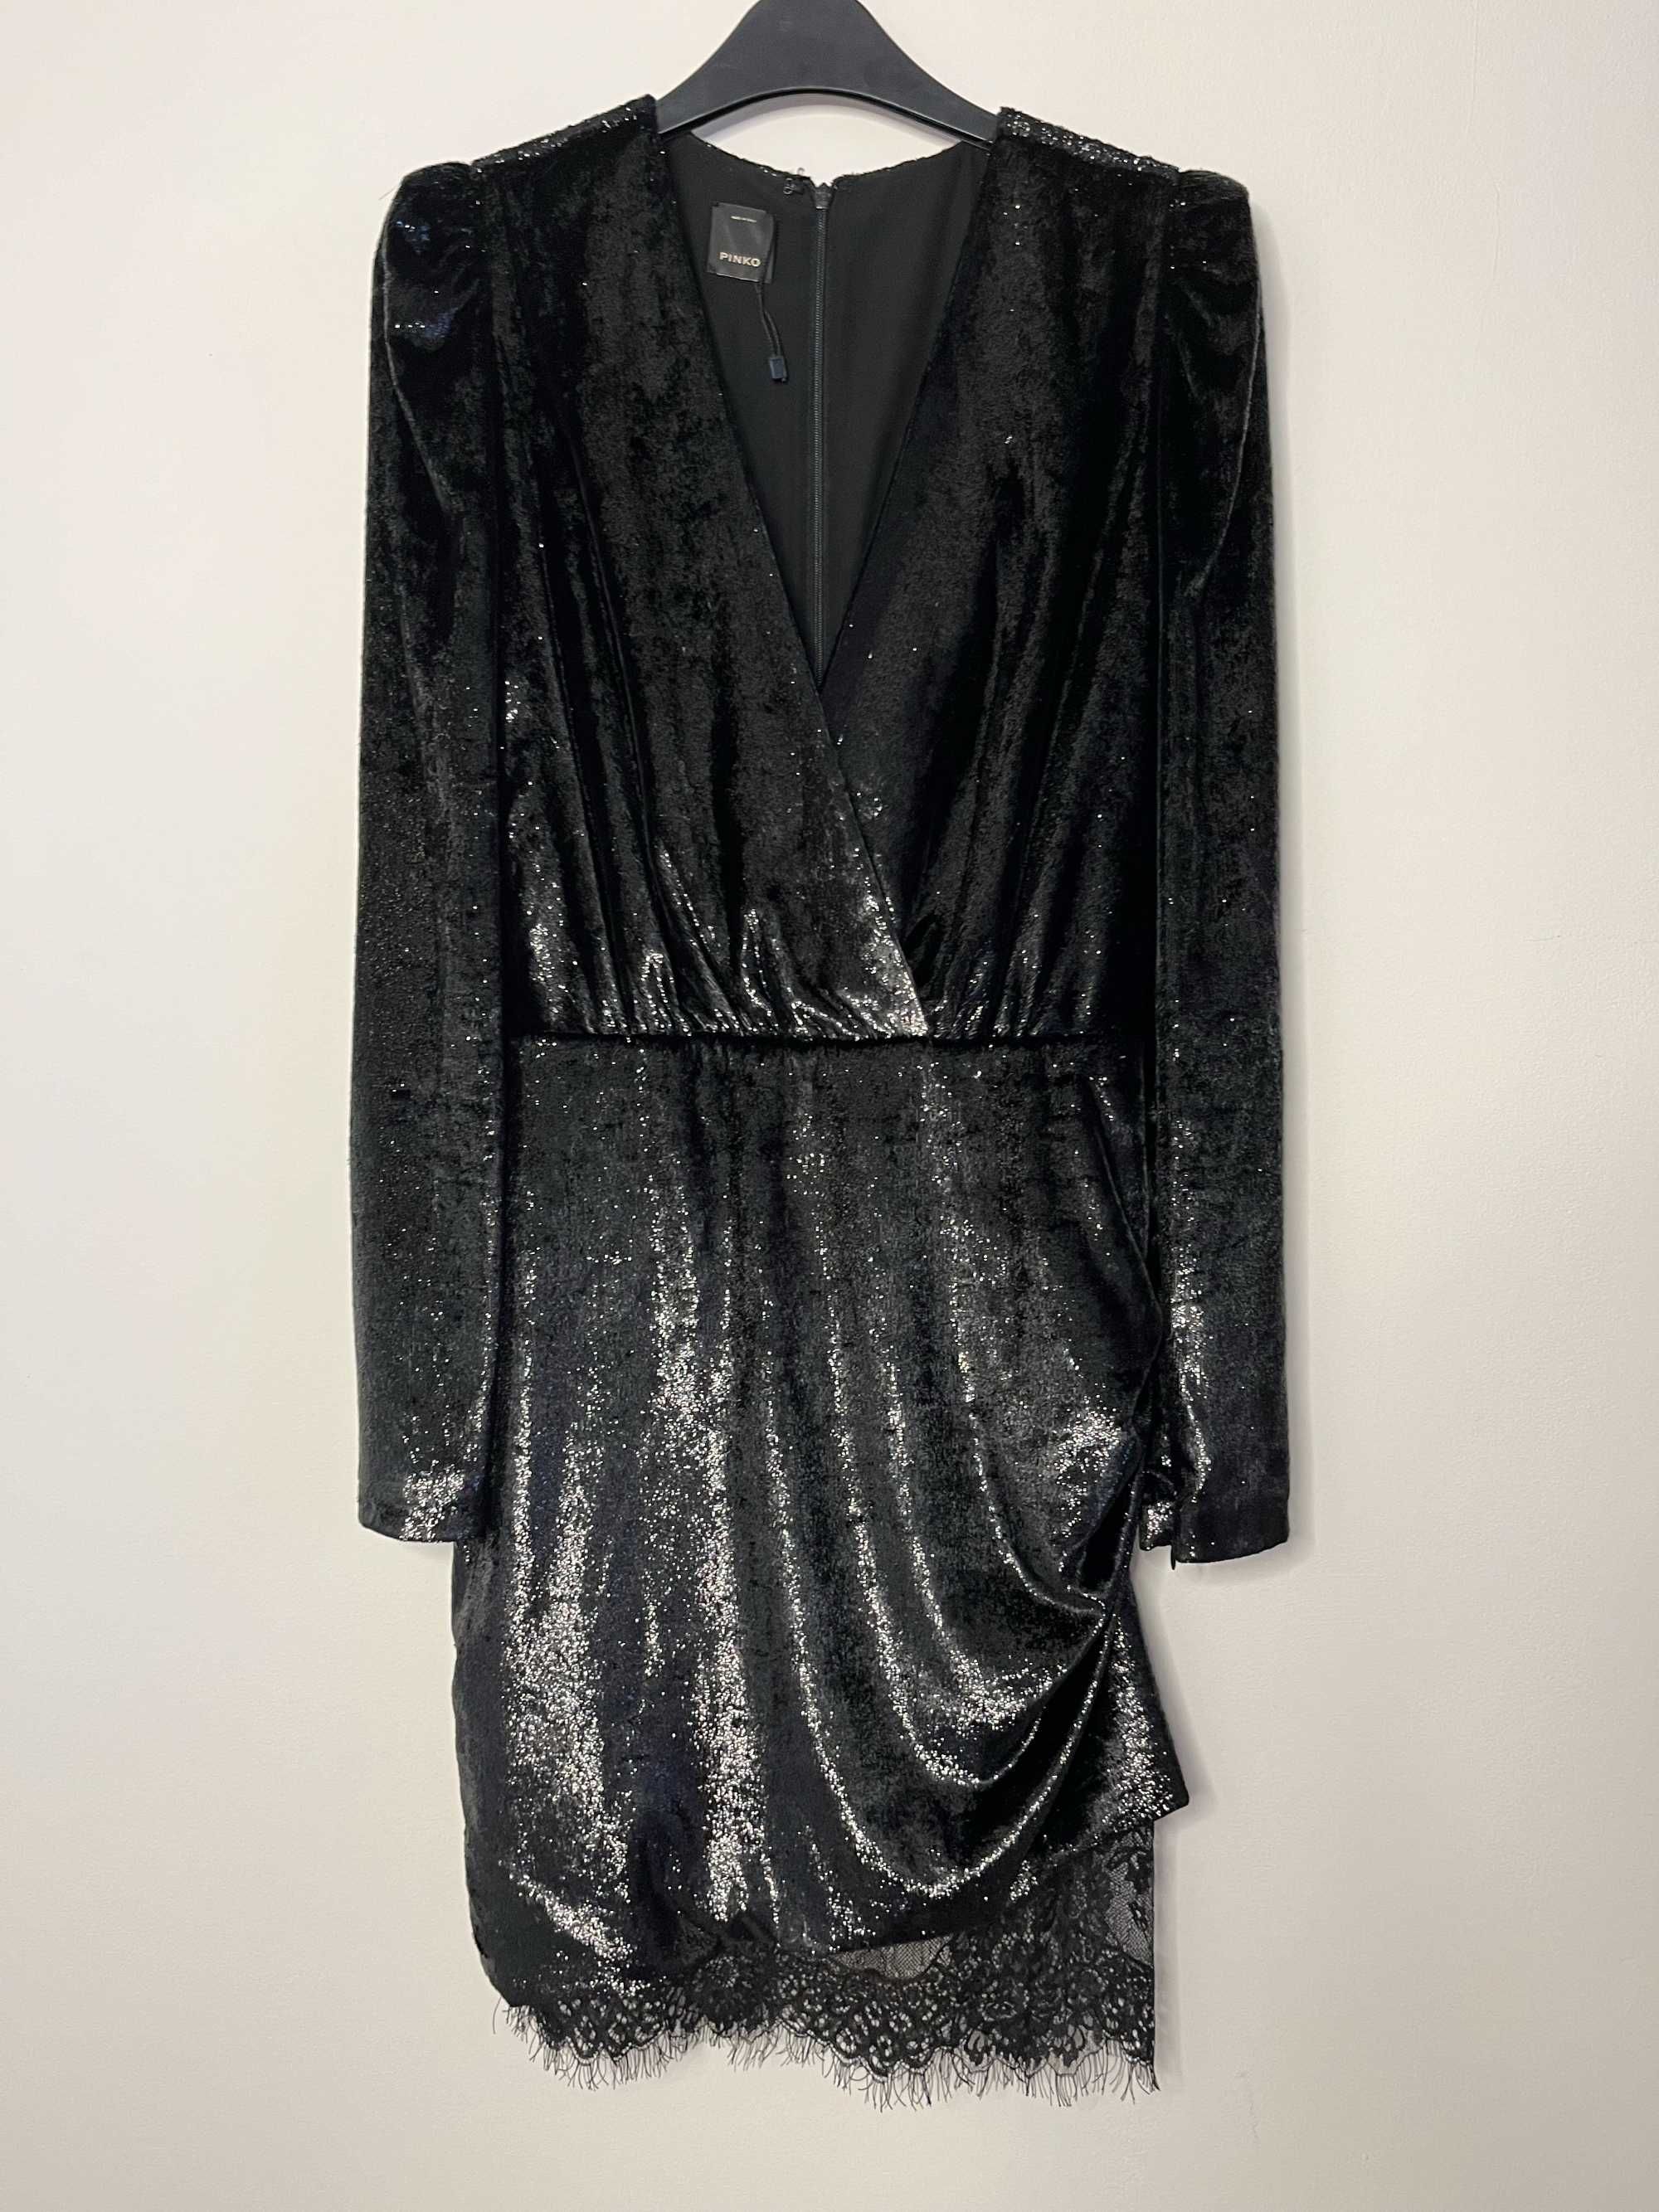 Pinko къса черна блестяща рокля с дълъг ръкав, размер S/EU36, НОВА